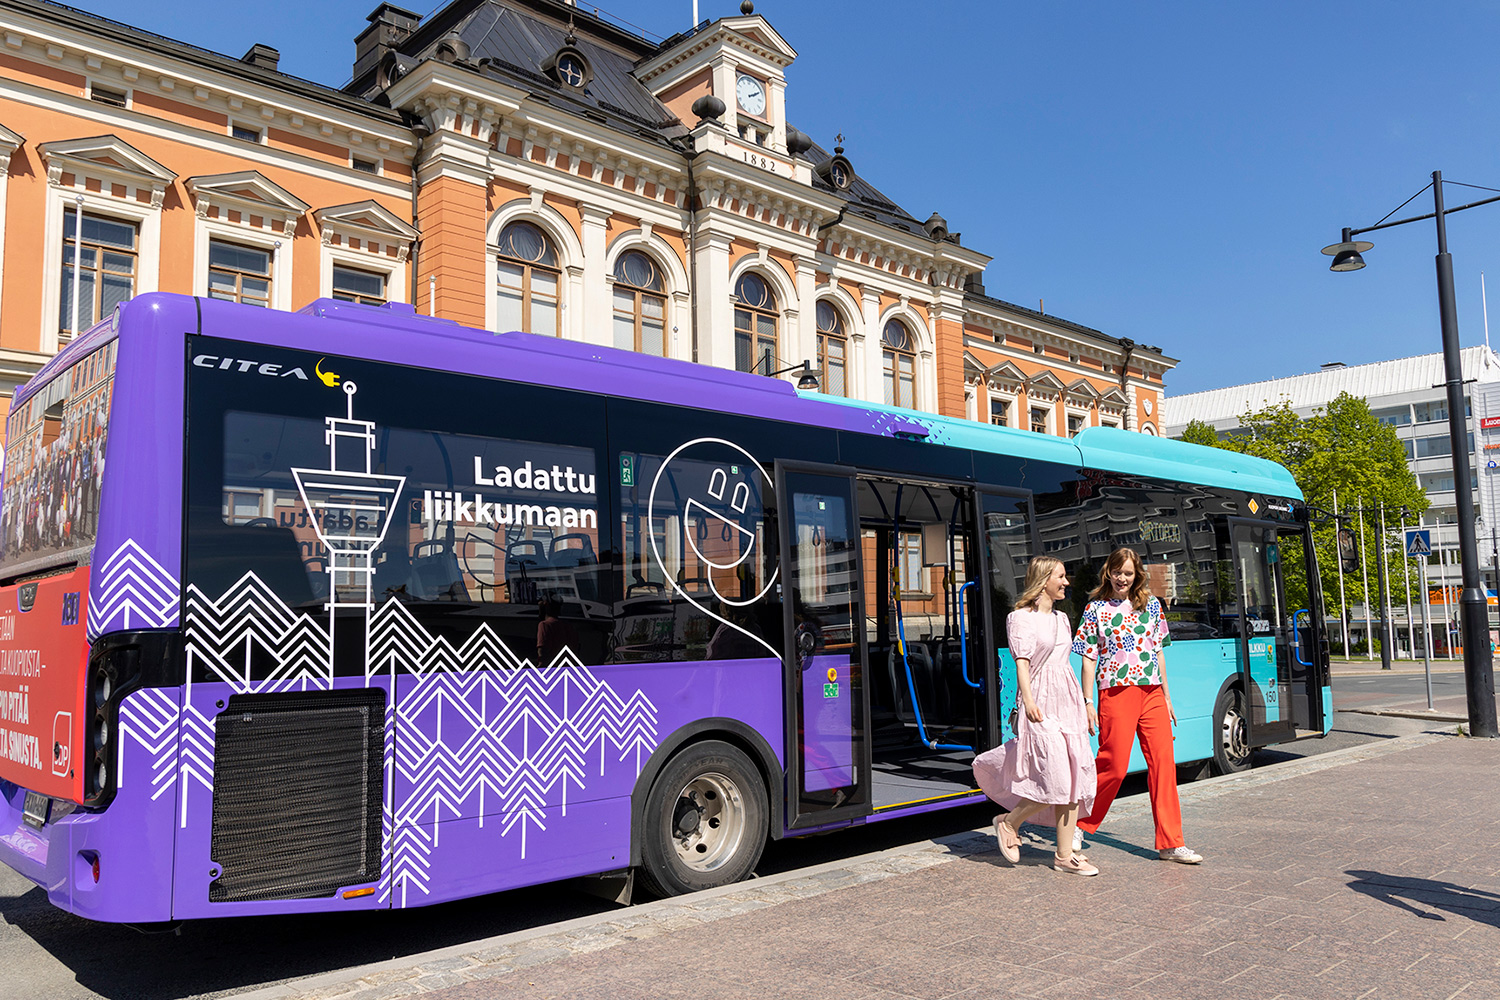 Turkoosi-violetti sähköbussi on pysähtynyt kaupungintalon eteen kauniina kesäpäivänä ja kaksi ystävystä nousee bussista torille.